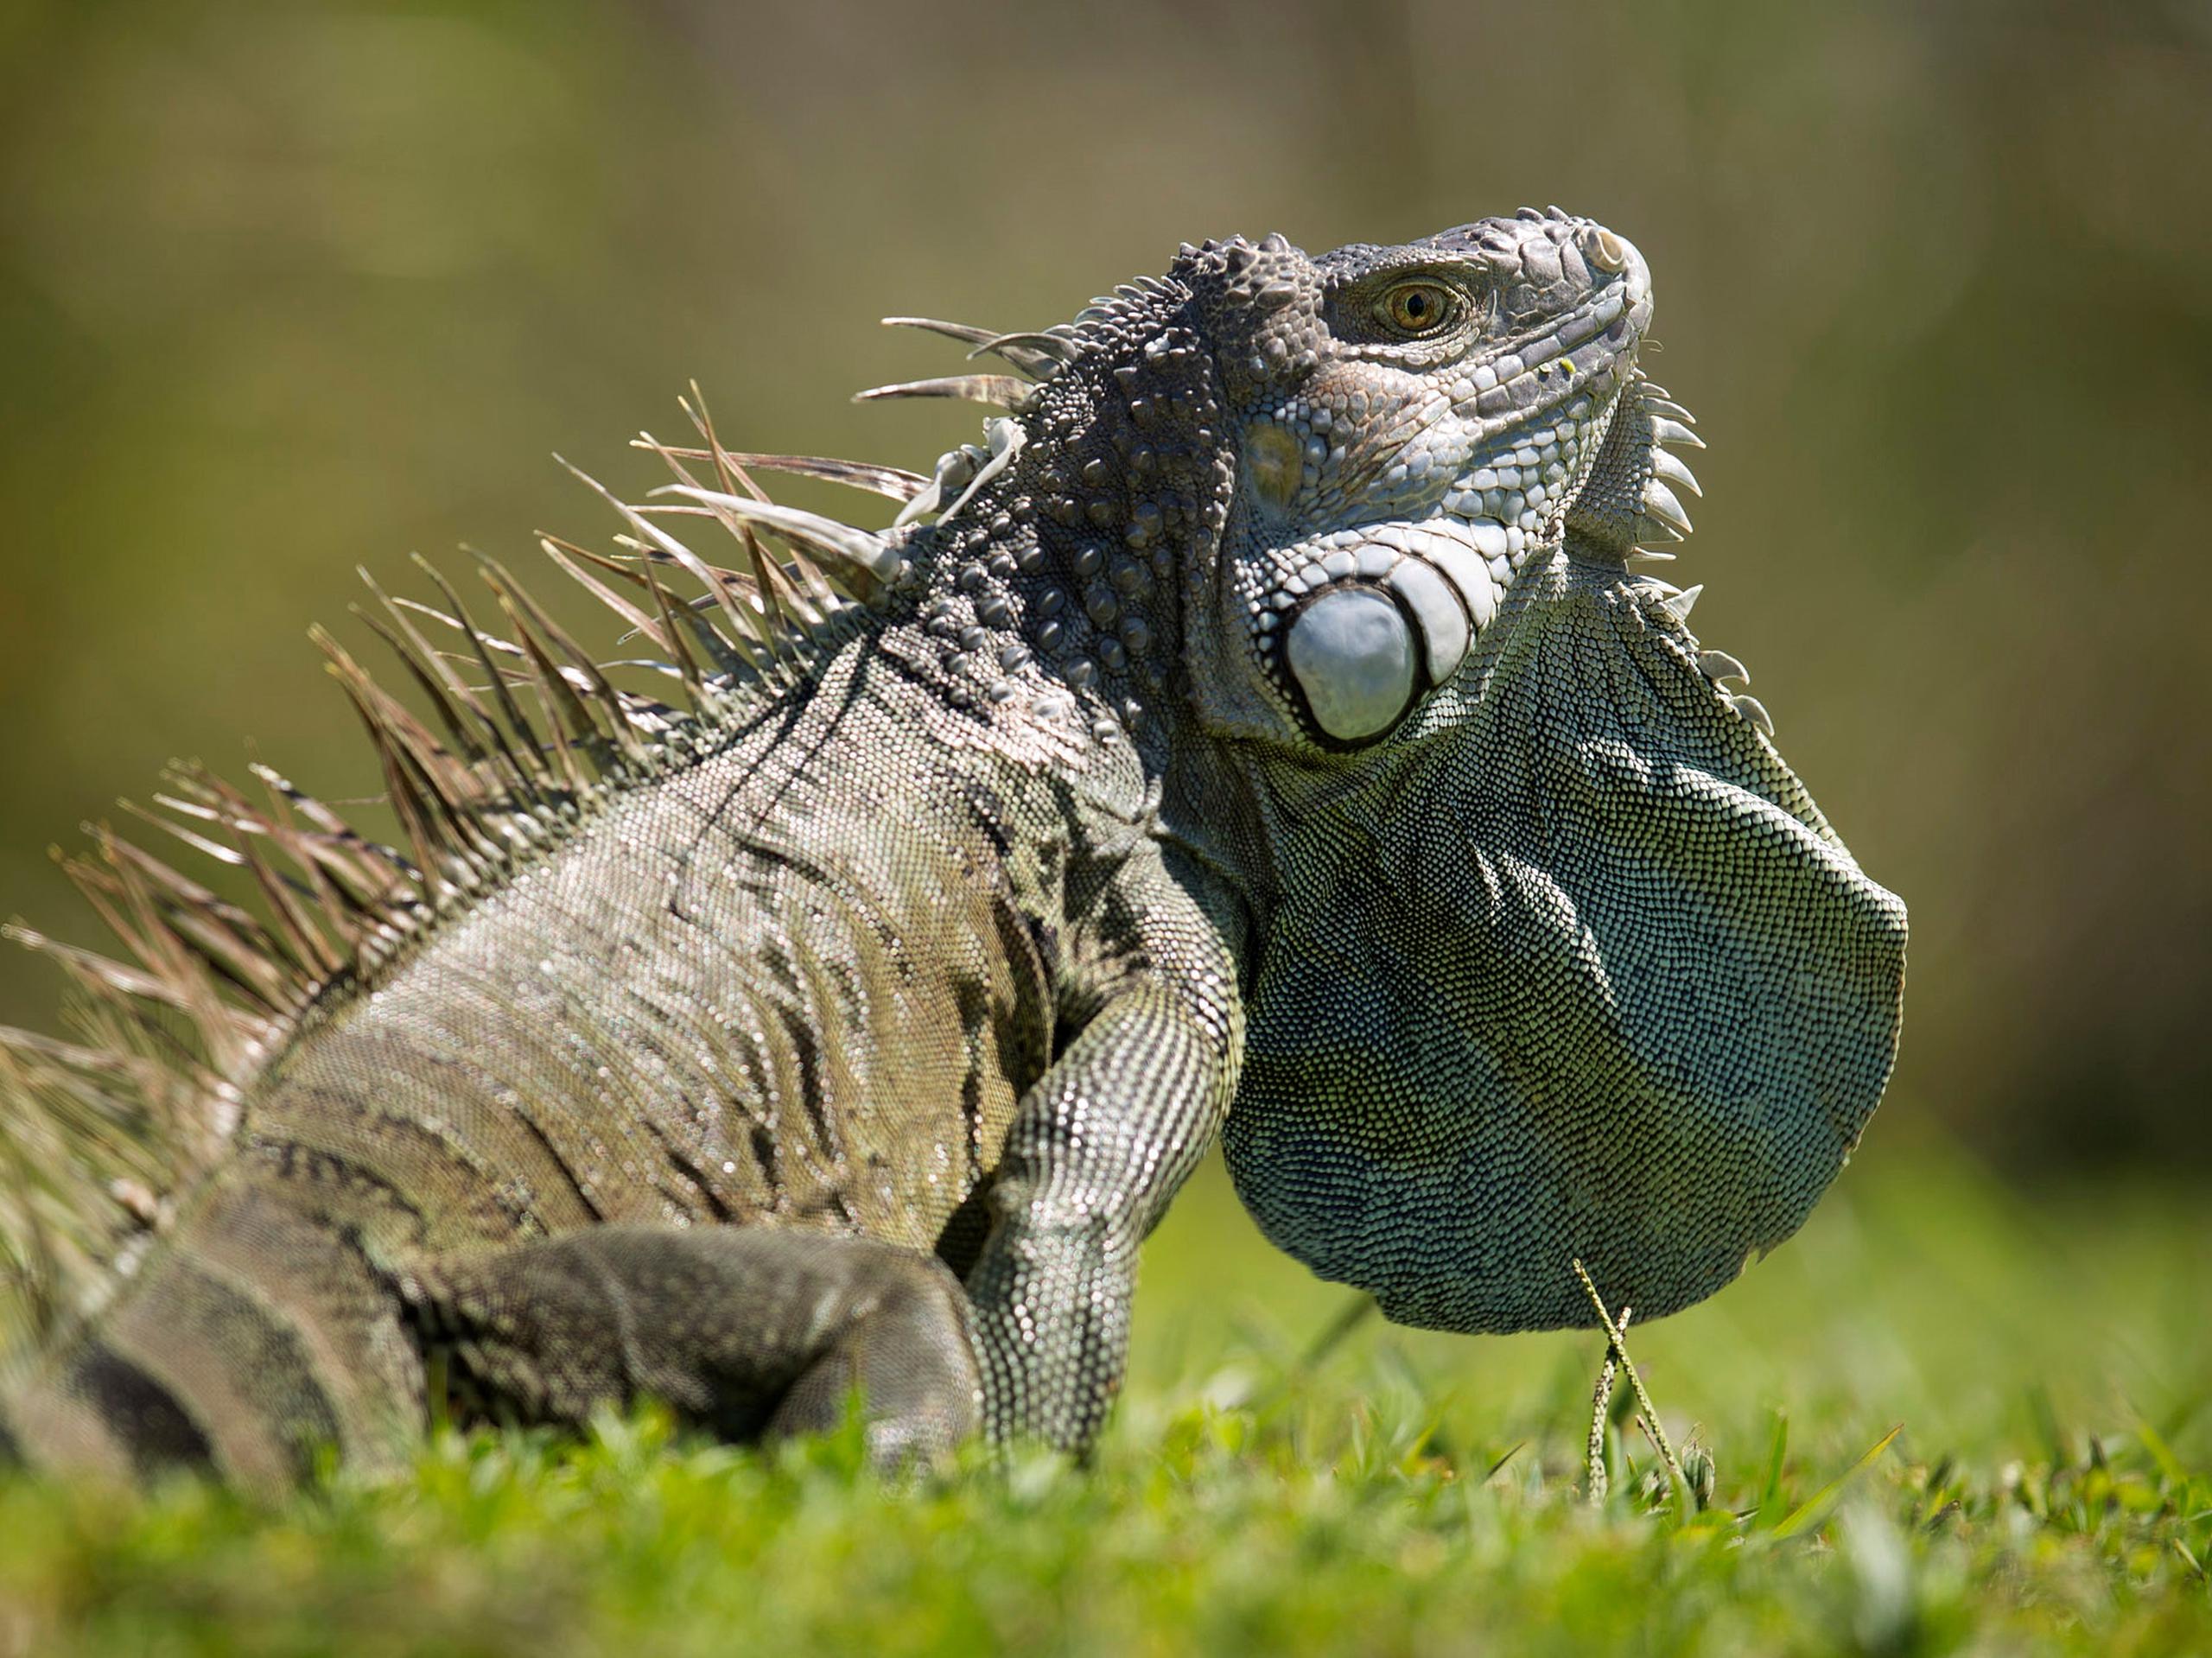 Las iguanas verdes, naturales de Centroamérica y Suramérica, han encontrado el paraíso en el sur de Florida, donde han proliferado tanto que en 2019 la FWC dio al ciudadano común licencia para matarlas.